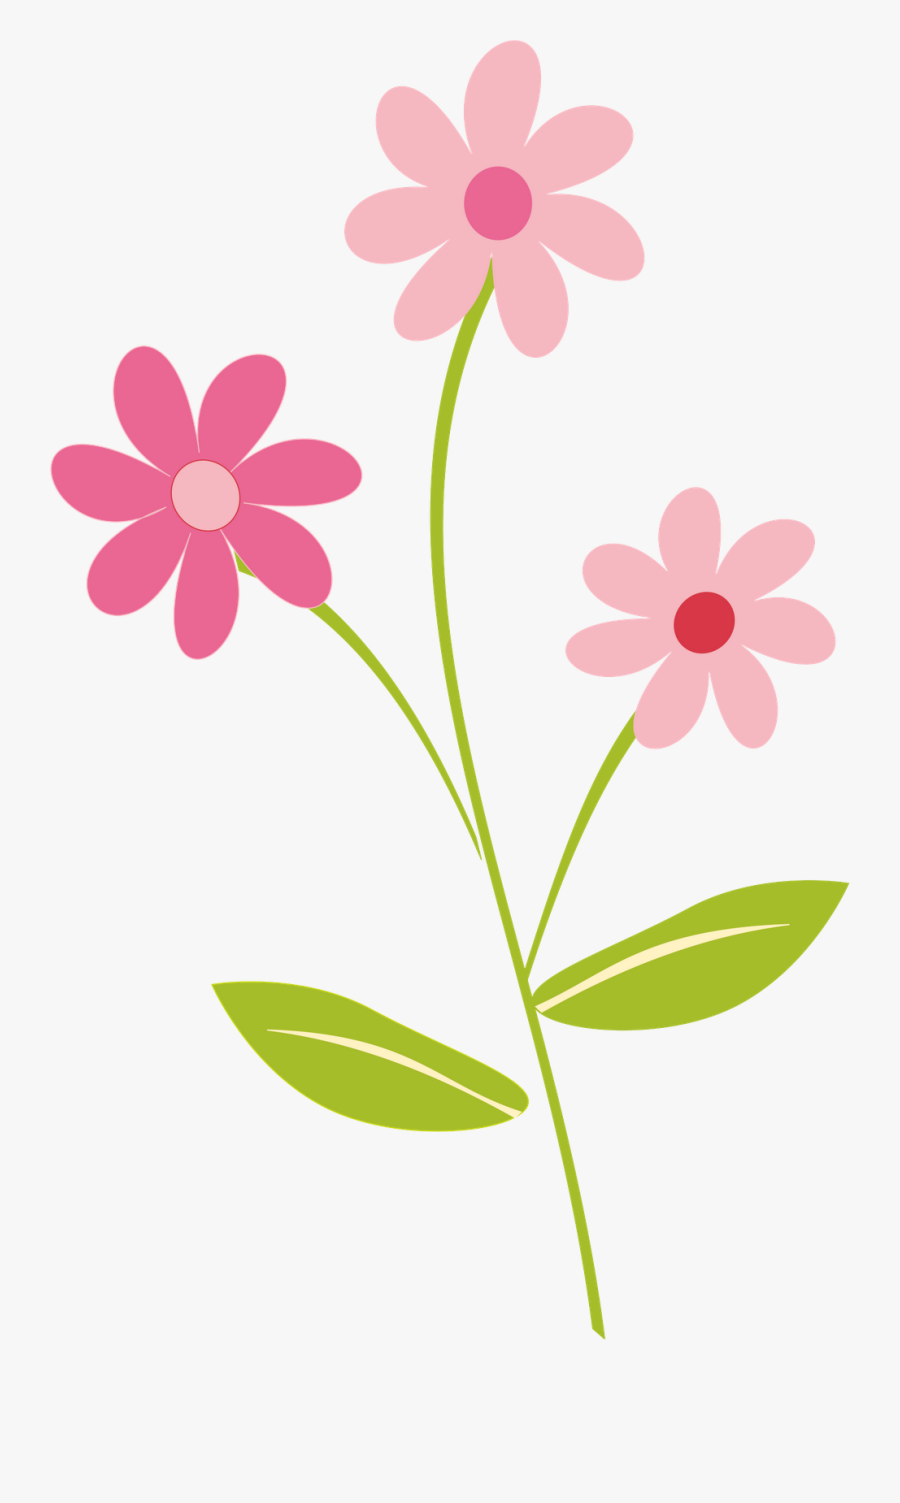 Transparent Flower Clip Art - Flower Clipart Png, Transparent Clipart